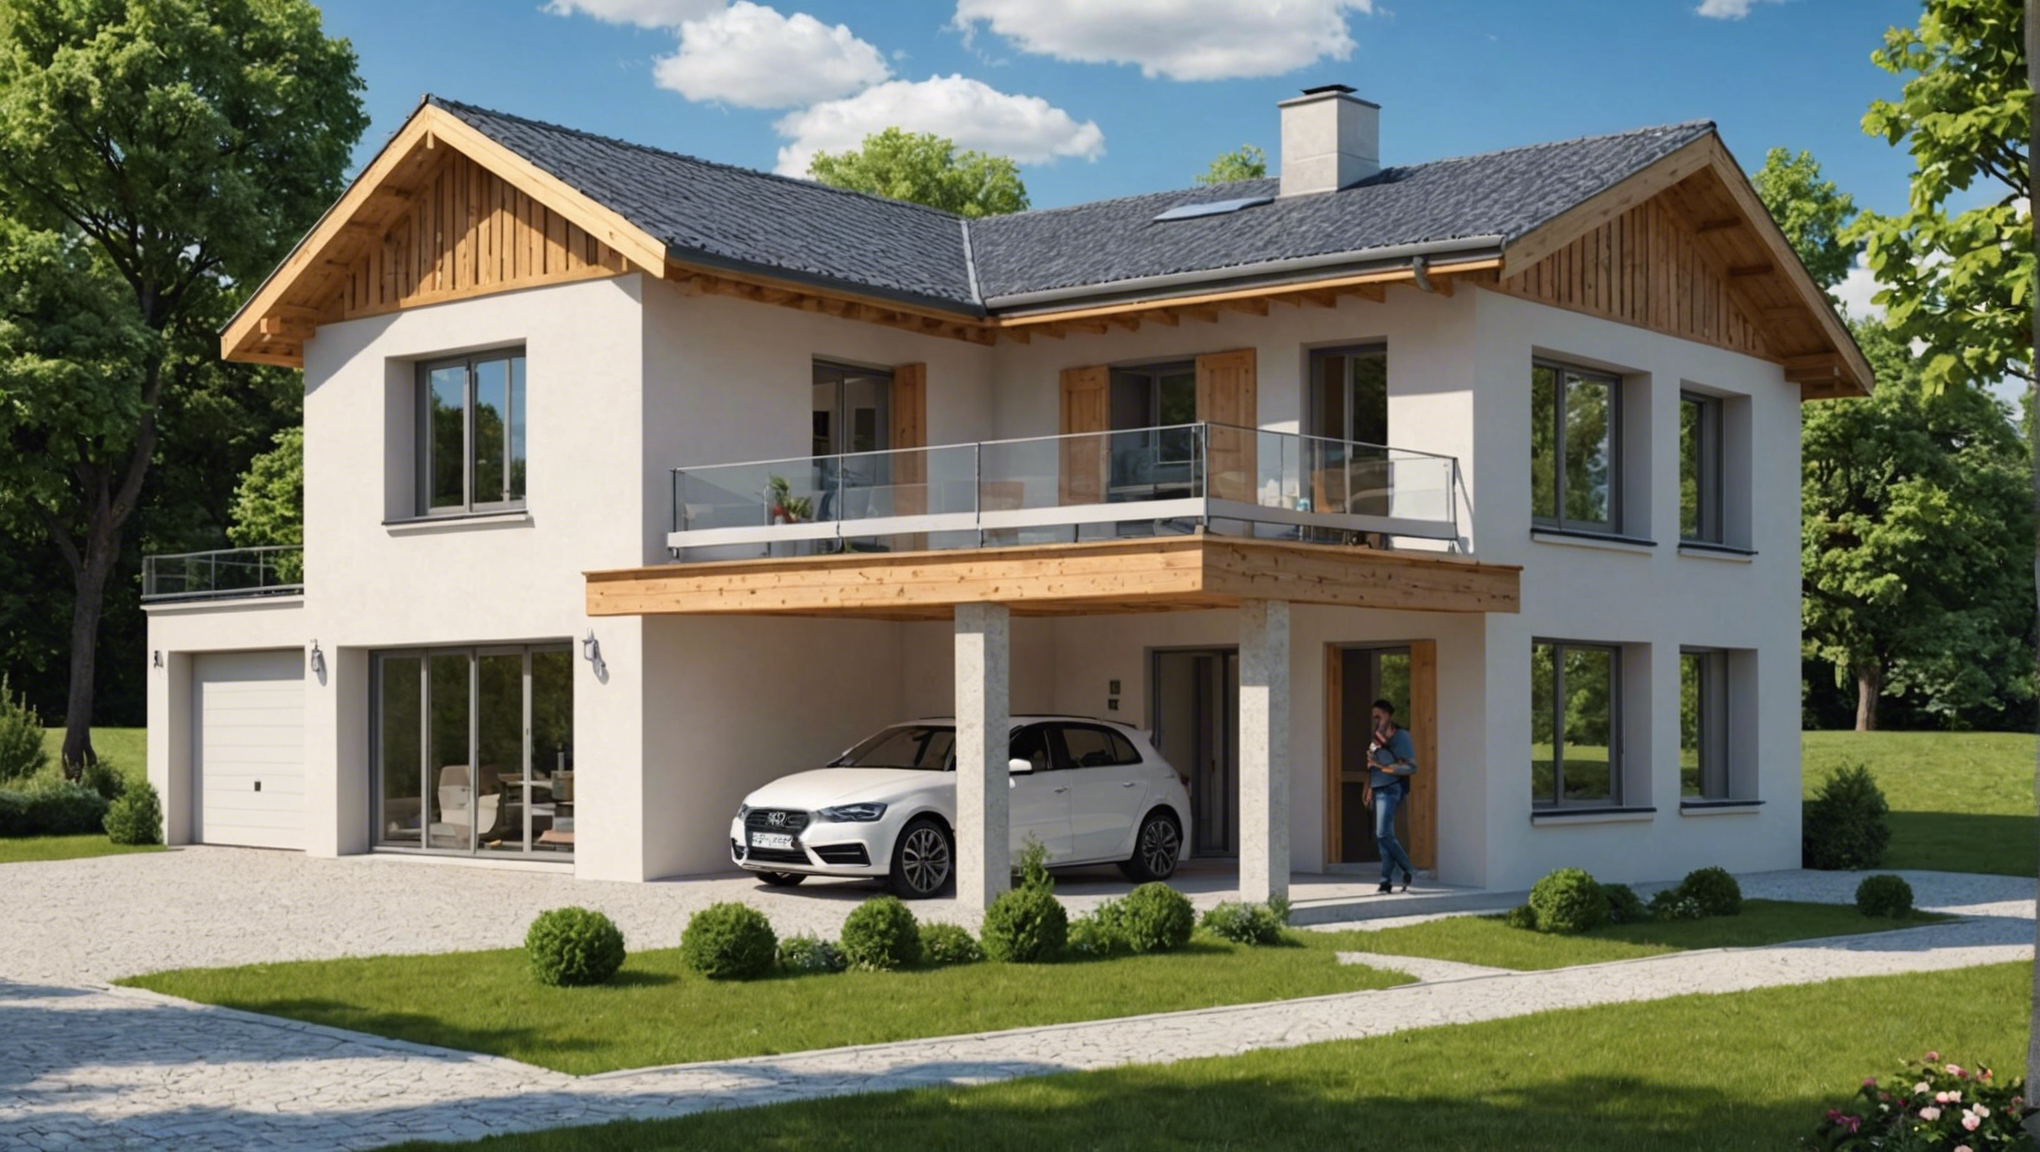 découvrez le nouveau type de construction de maison qui révolutionne l'industrie immobilière.